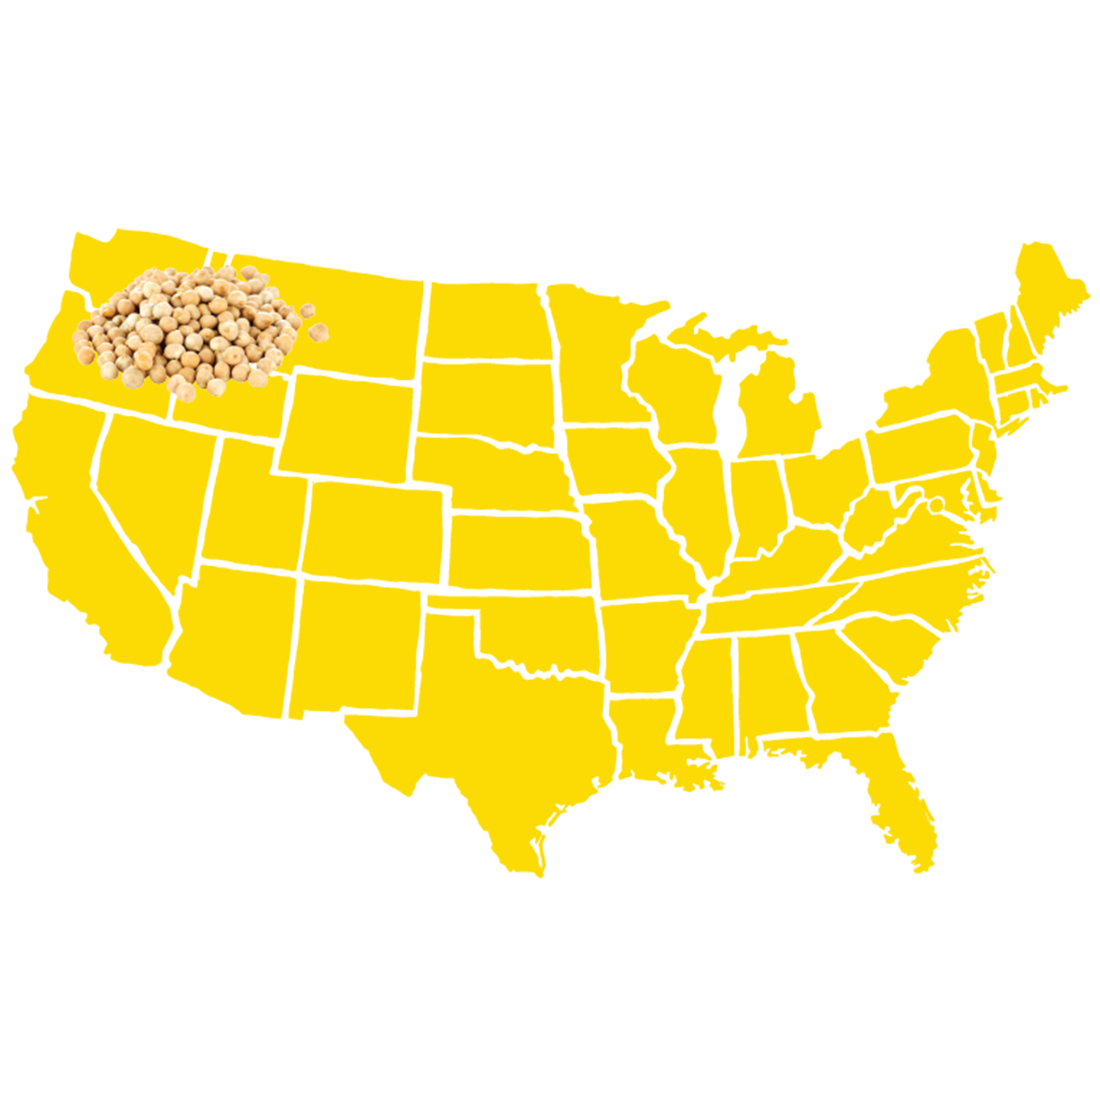 BlondeChickpeas.Map